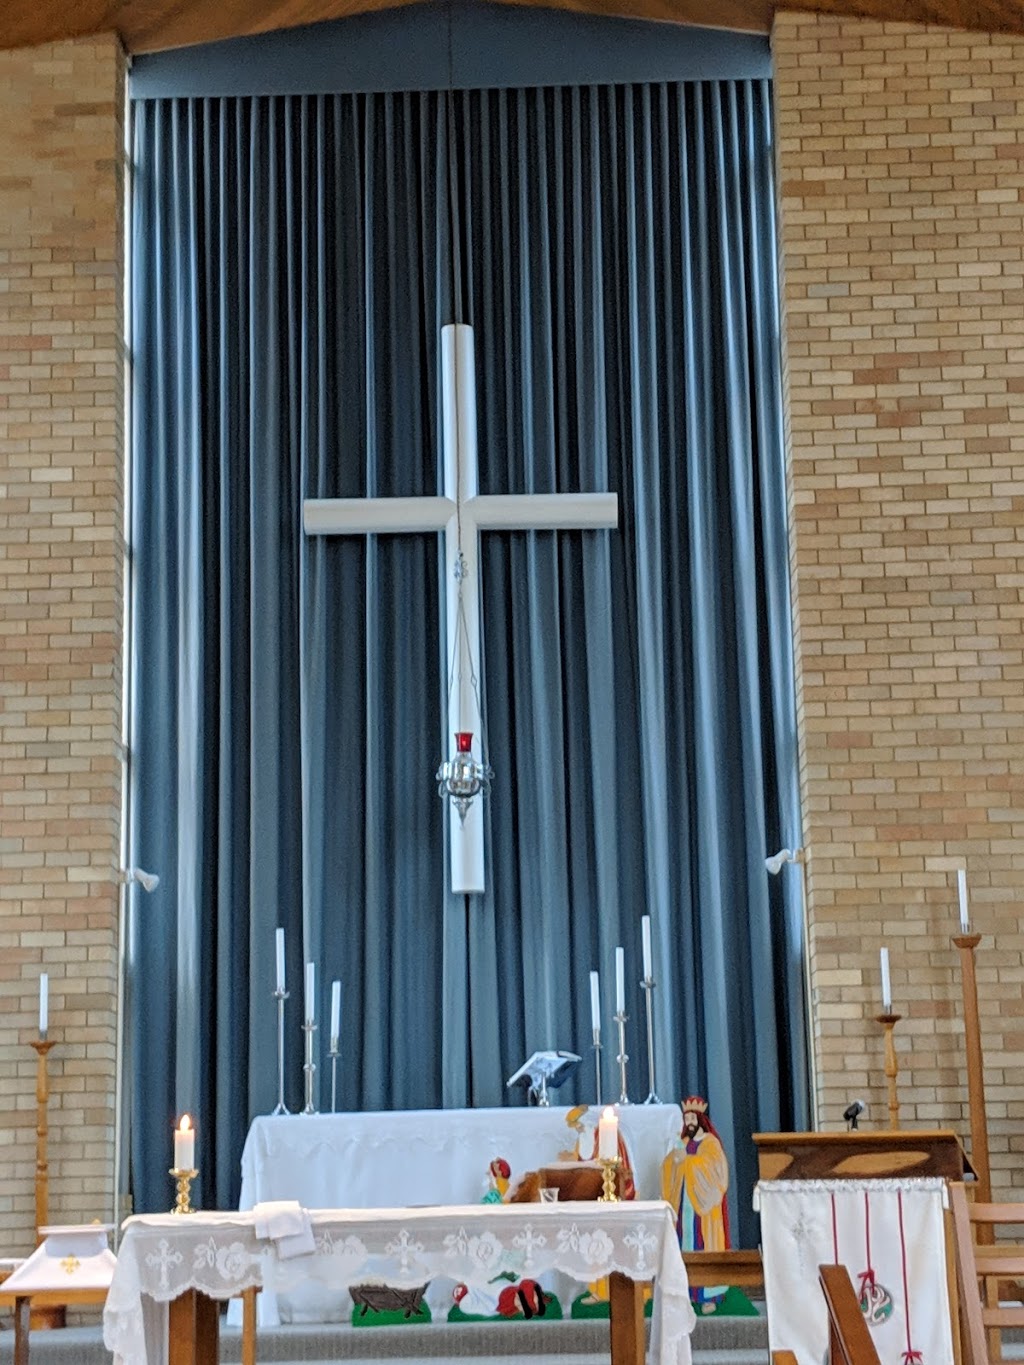 All Saints Anglican Church | church | 24 Church St, Belmont NSW 2280, Australia | 0249459993 OR +61 2 4945 9993